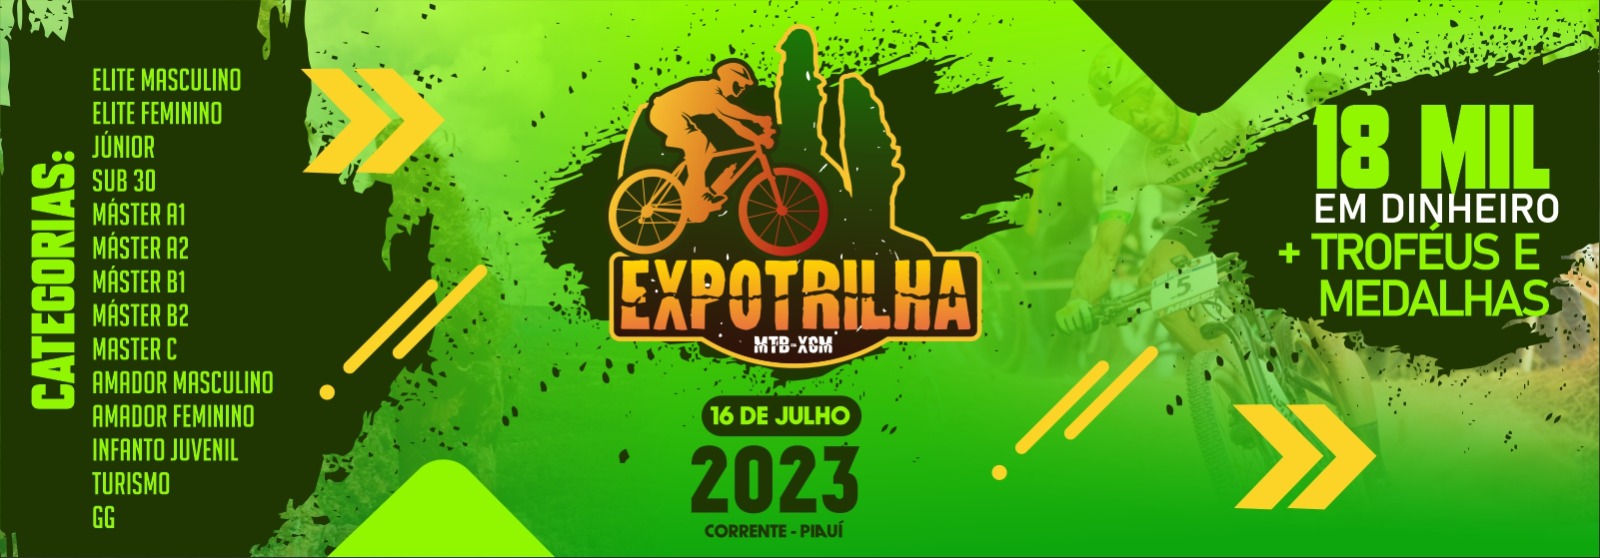 expotrilha-2023-banner